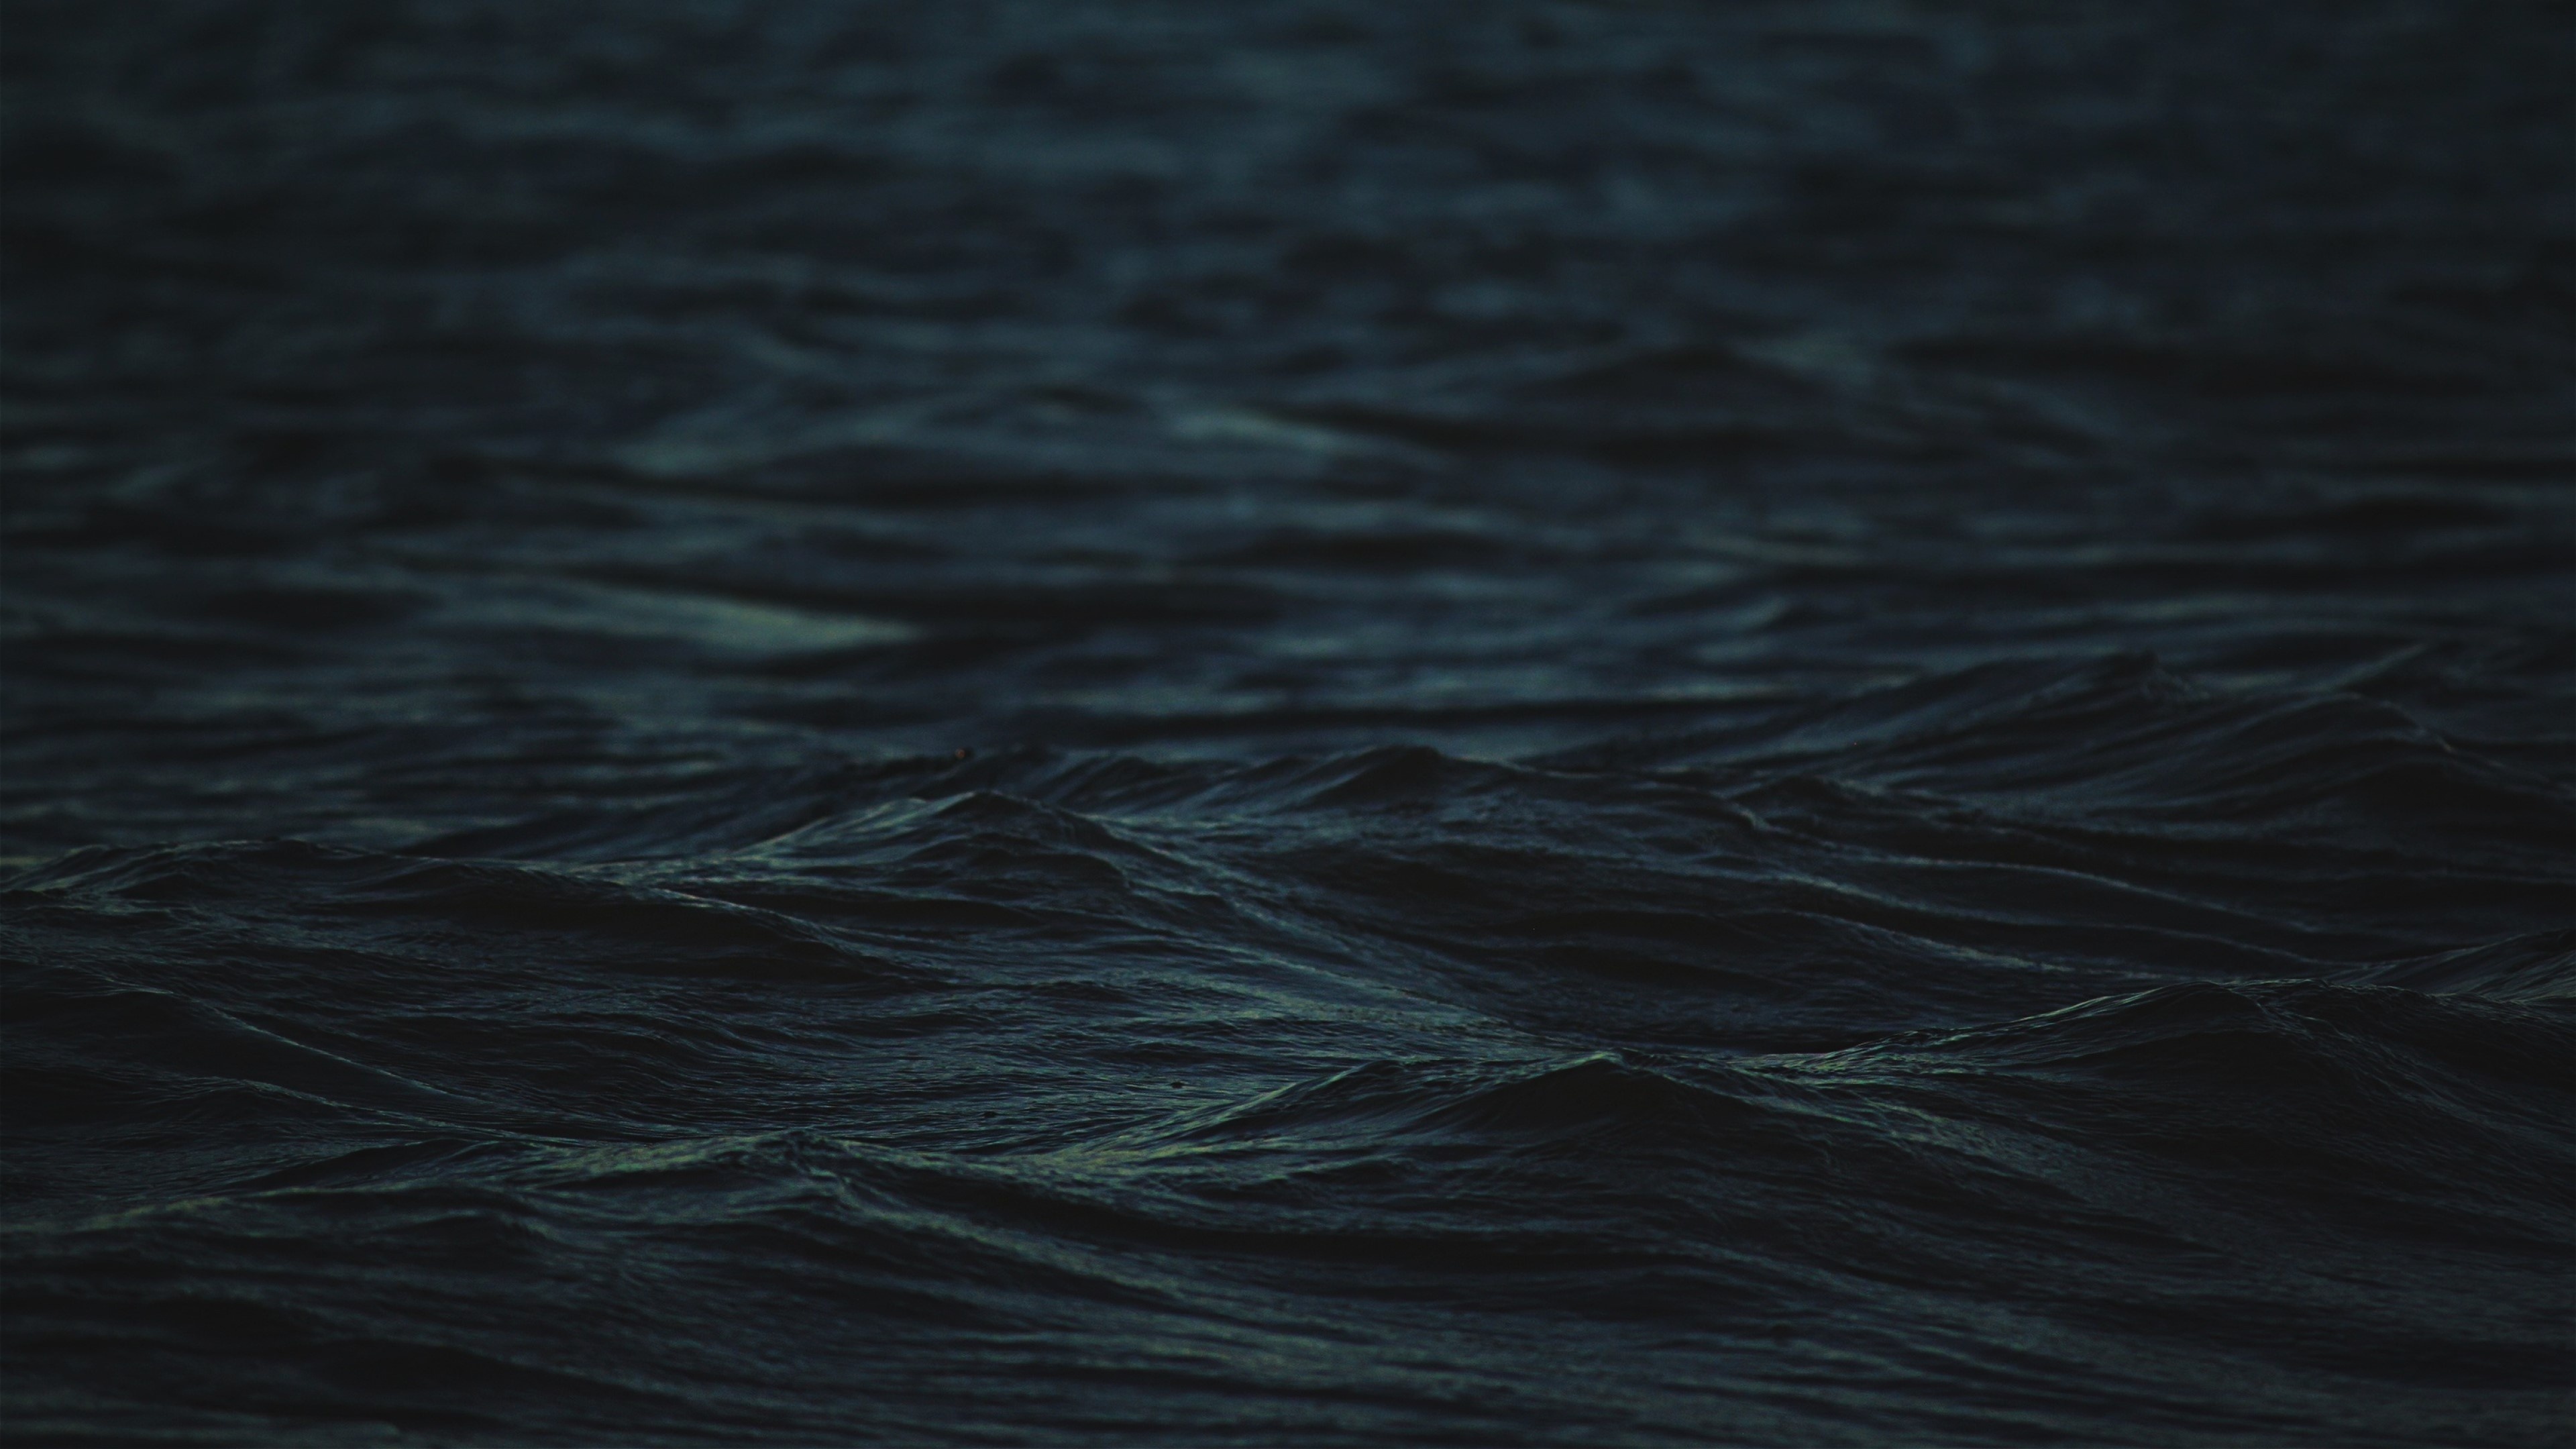 General 3840x2160 minimalism blue dark sea waves water depth of field outdoors